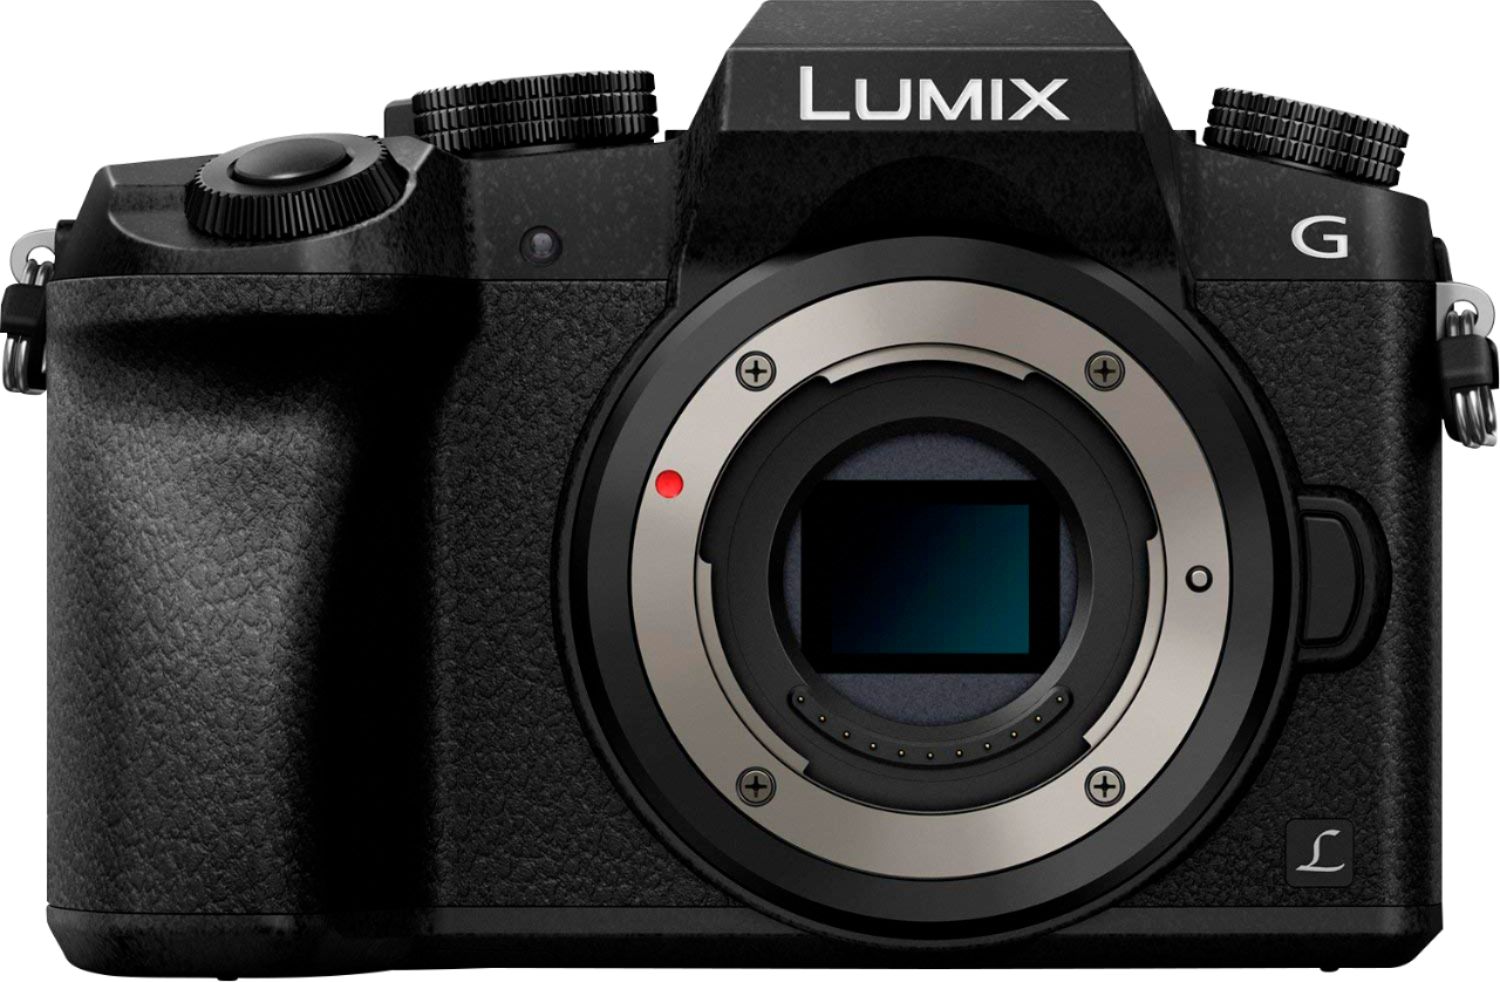 Panasonic LUMIX G7 Mirrorless 4K Photo Digital Camera Body with 14